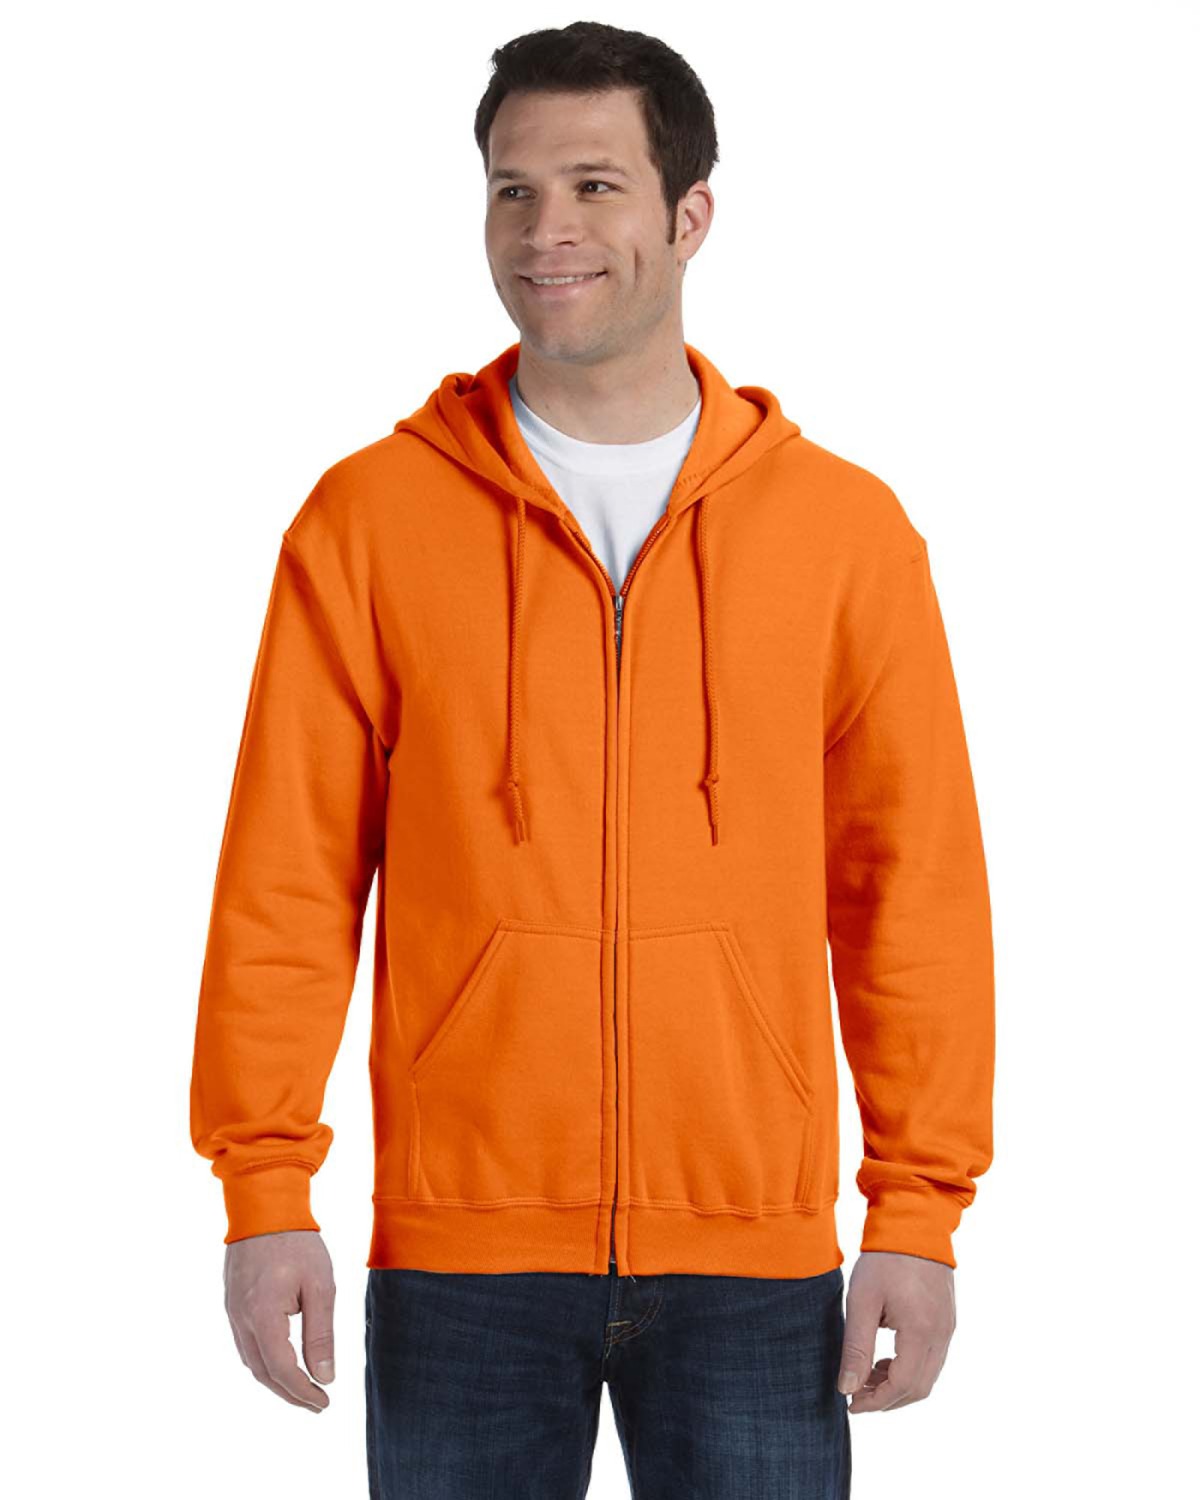 Mom's Favorite - Men's Sweatshirt Full-Zip Pullover, Up to Men Size 5XL - Louisville, Women's, Red